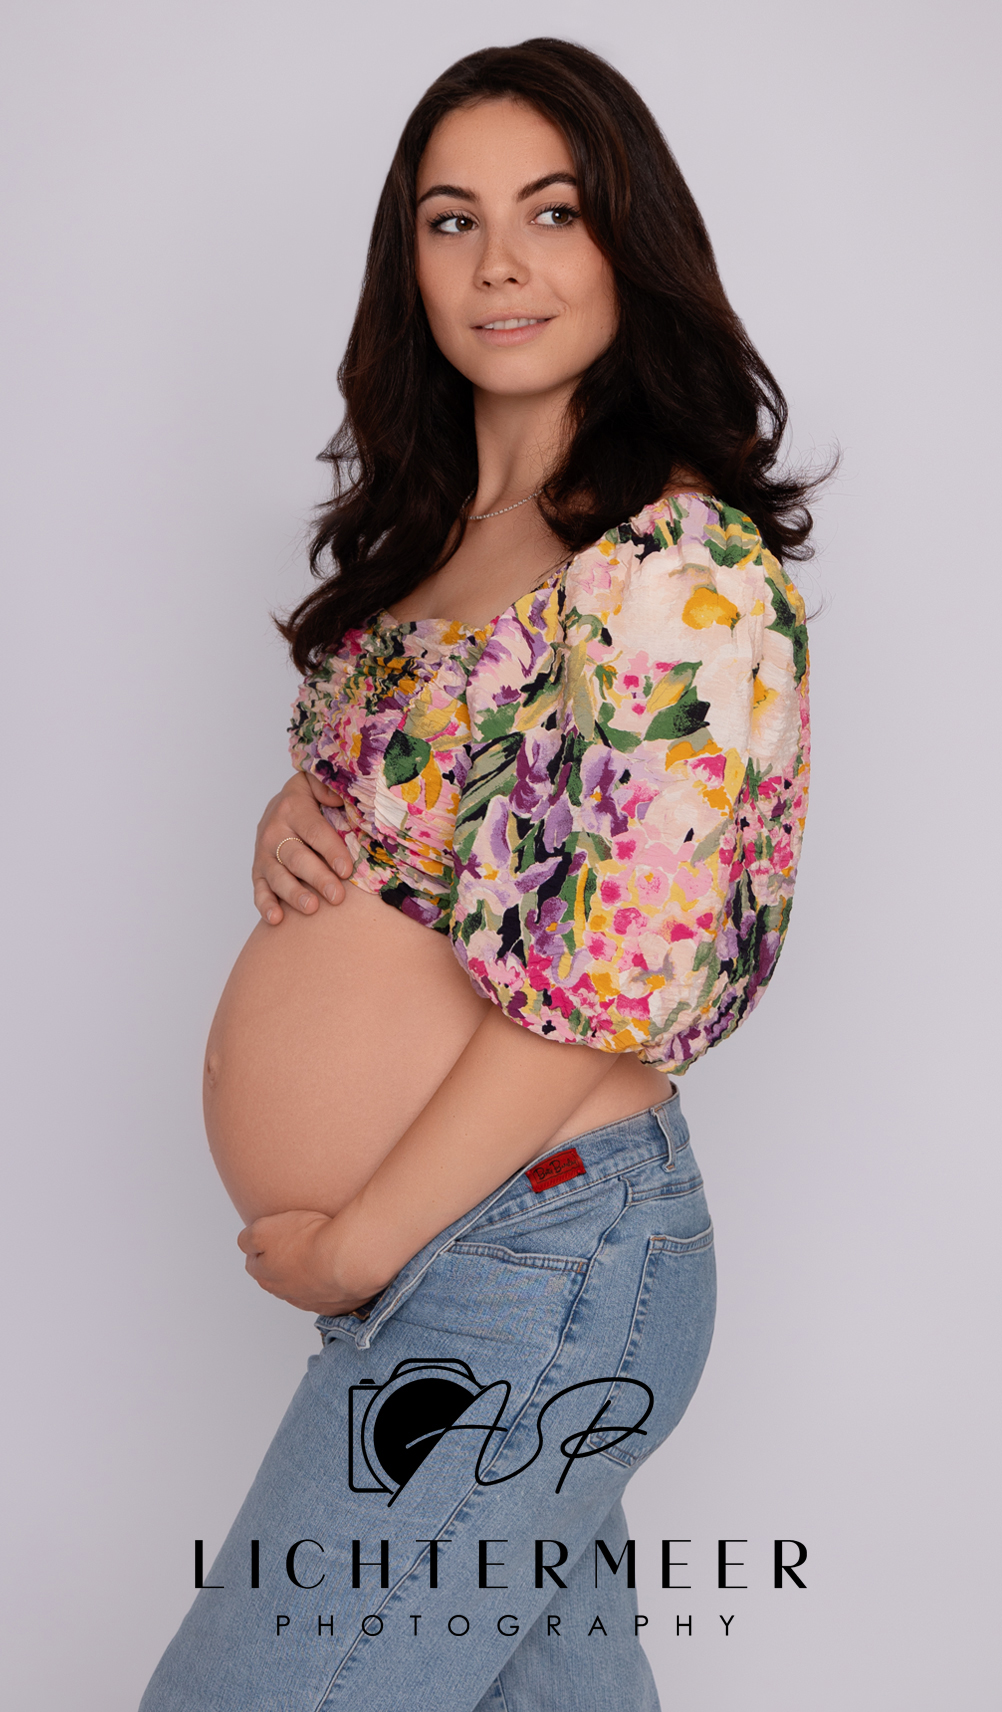 Schwangere Frau in schöner Pose fotografiert wurde